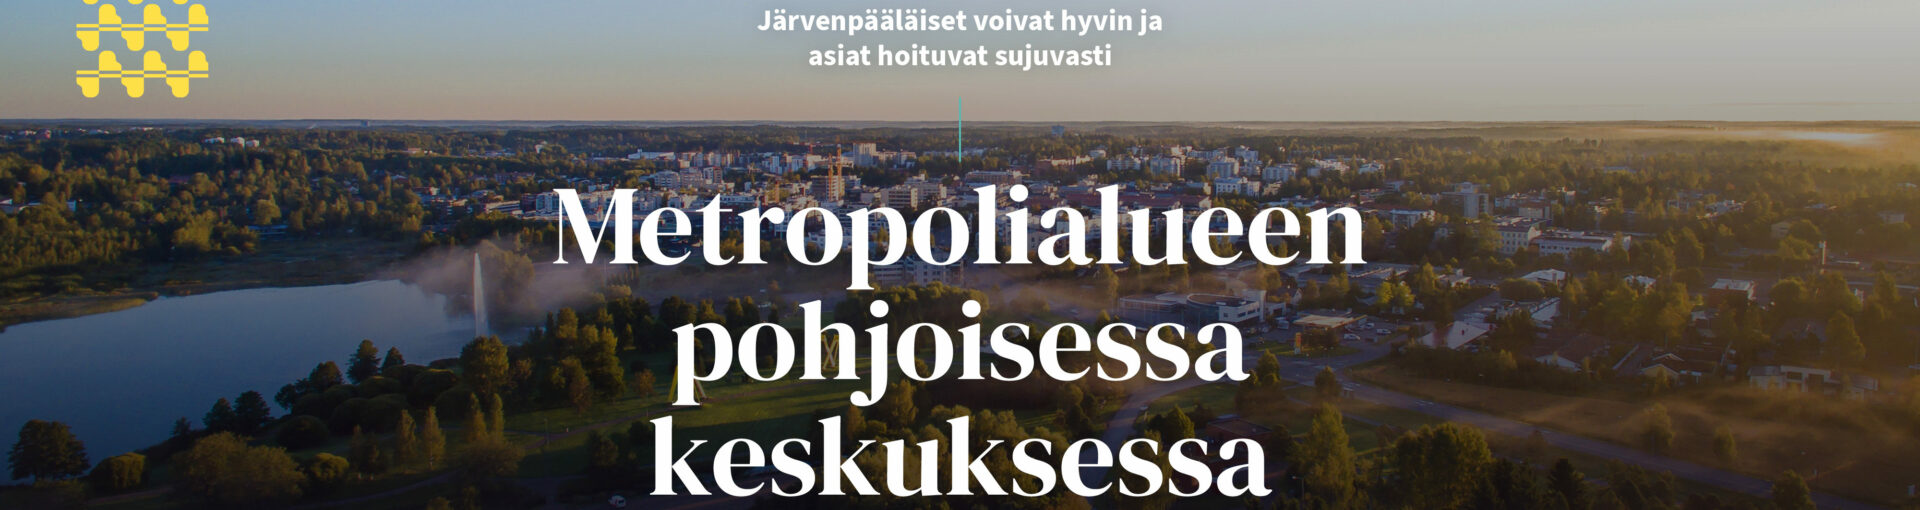 Ilmakuva kaupungista, jonka päällä tekstiä. Keskellä kuvaa teksti "Järvenpäävisio 2030: Järvenpääläiset voivat hyvin ja asiat hoituvat sujuvasti Metropolialueen pohjoisessa keskuksessa".